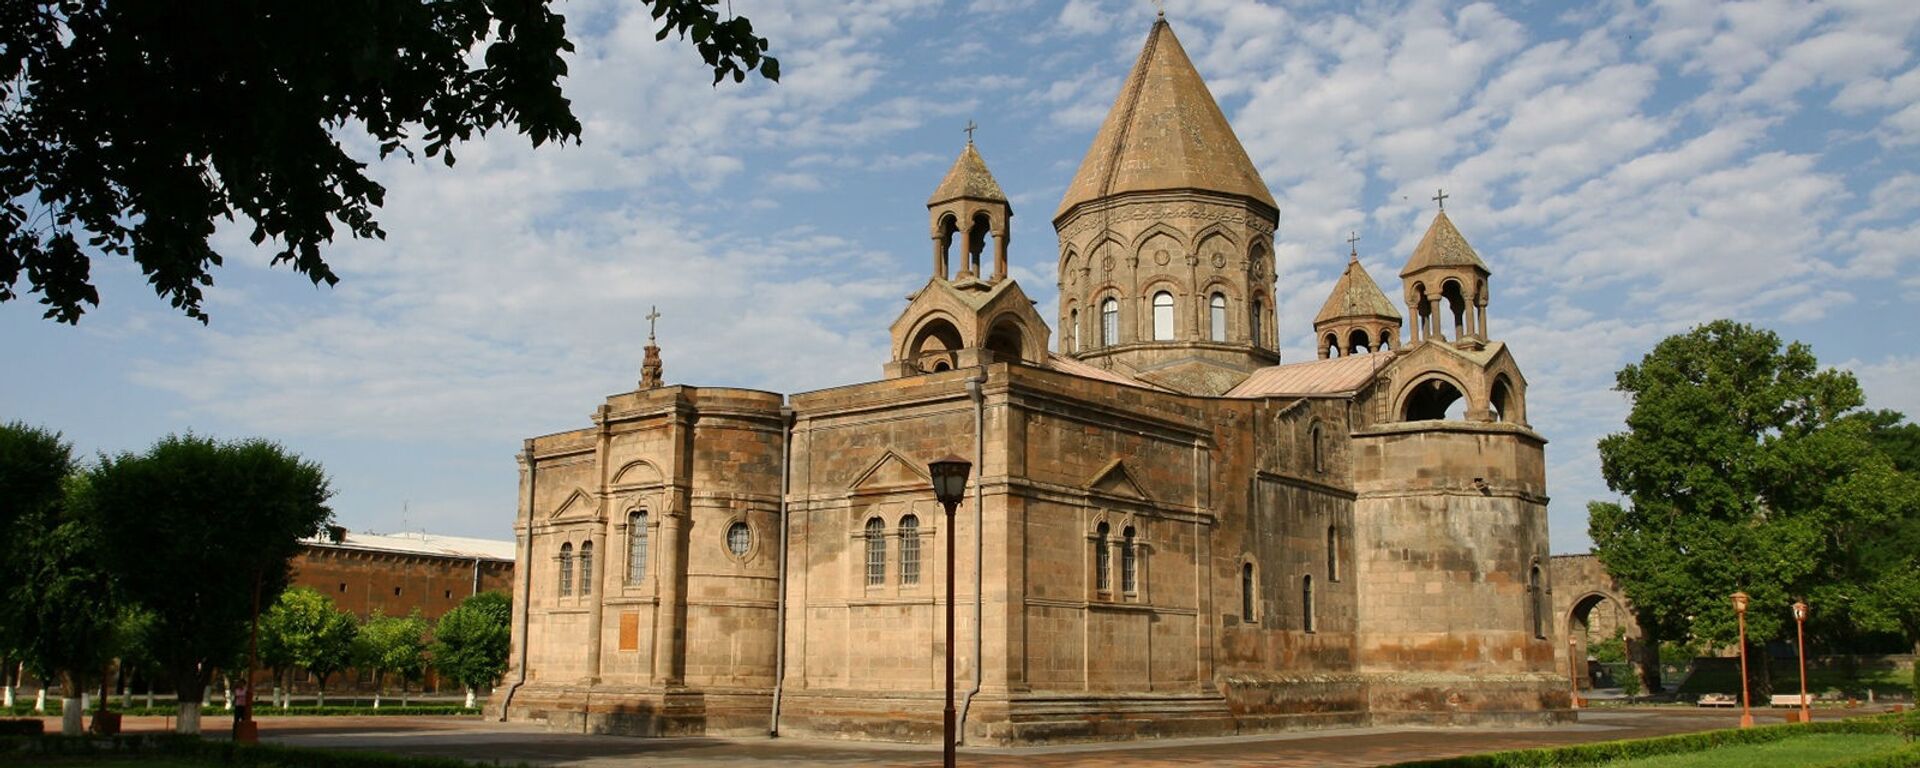 Эчмиадзинский монастырь - Sputnik Արմենիա, 1920, 24.06.2021